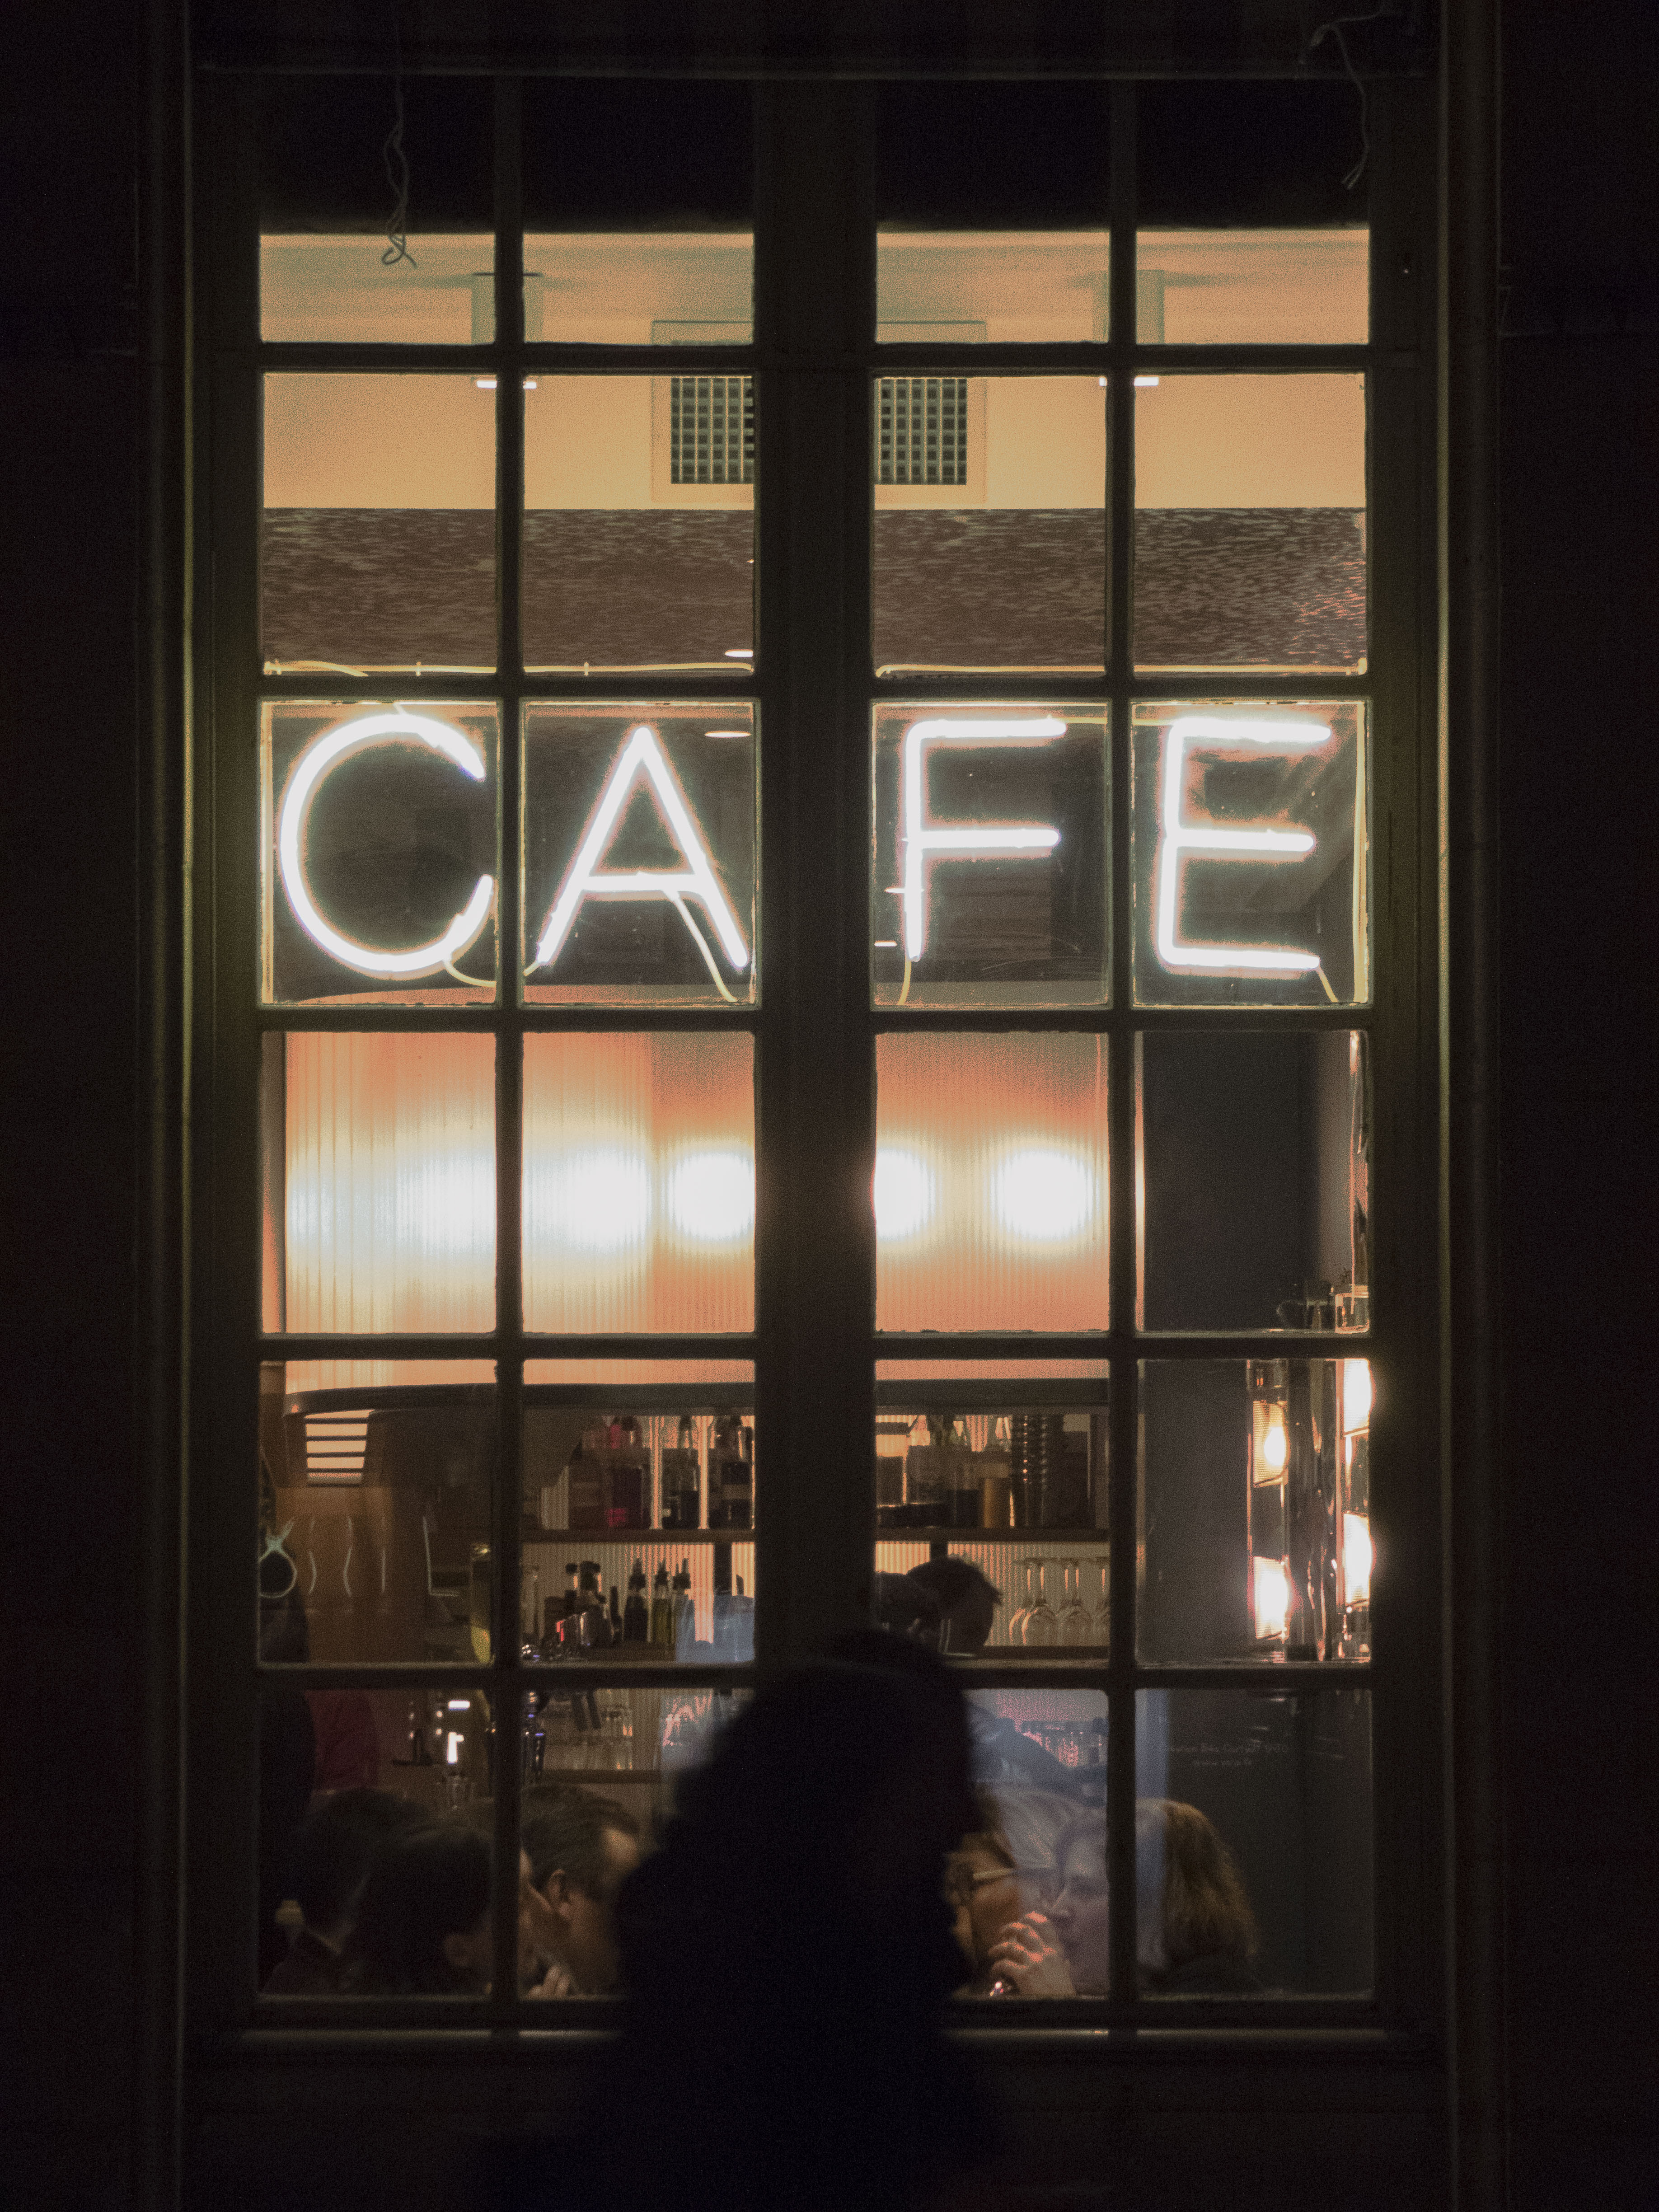 Café at night